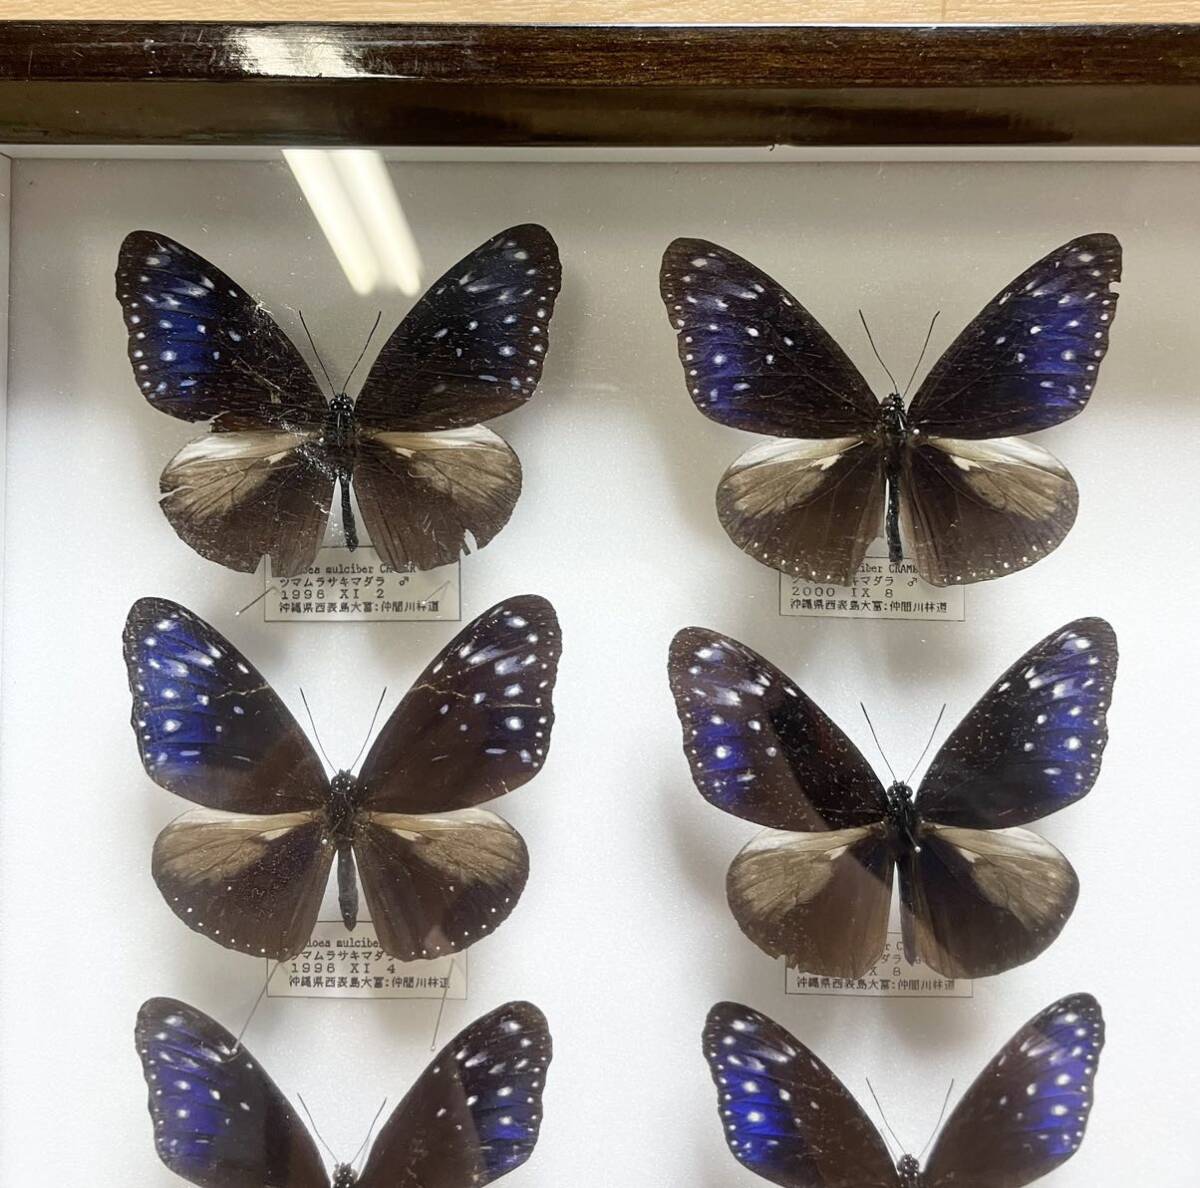  редкий! бабочка образец tsuma фиолетовый madala Германия коробка бабочка .1996 год и т.п. Okinawa префектура сокровище collector подлинная вещь D12